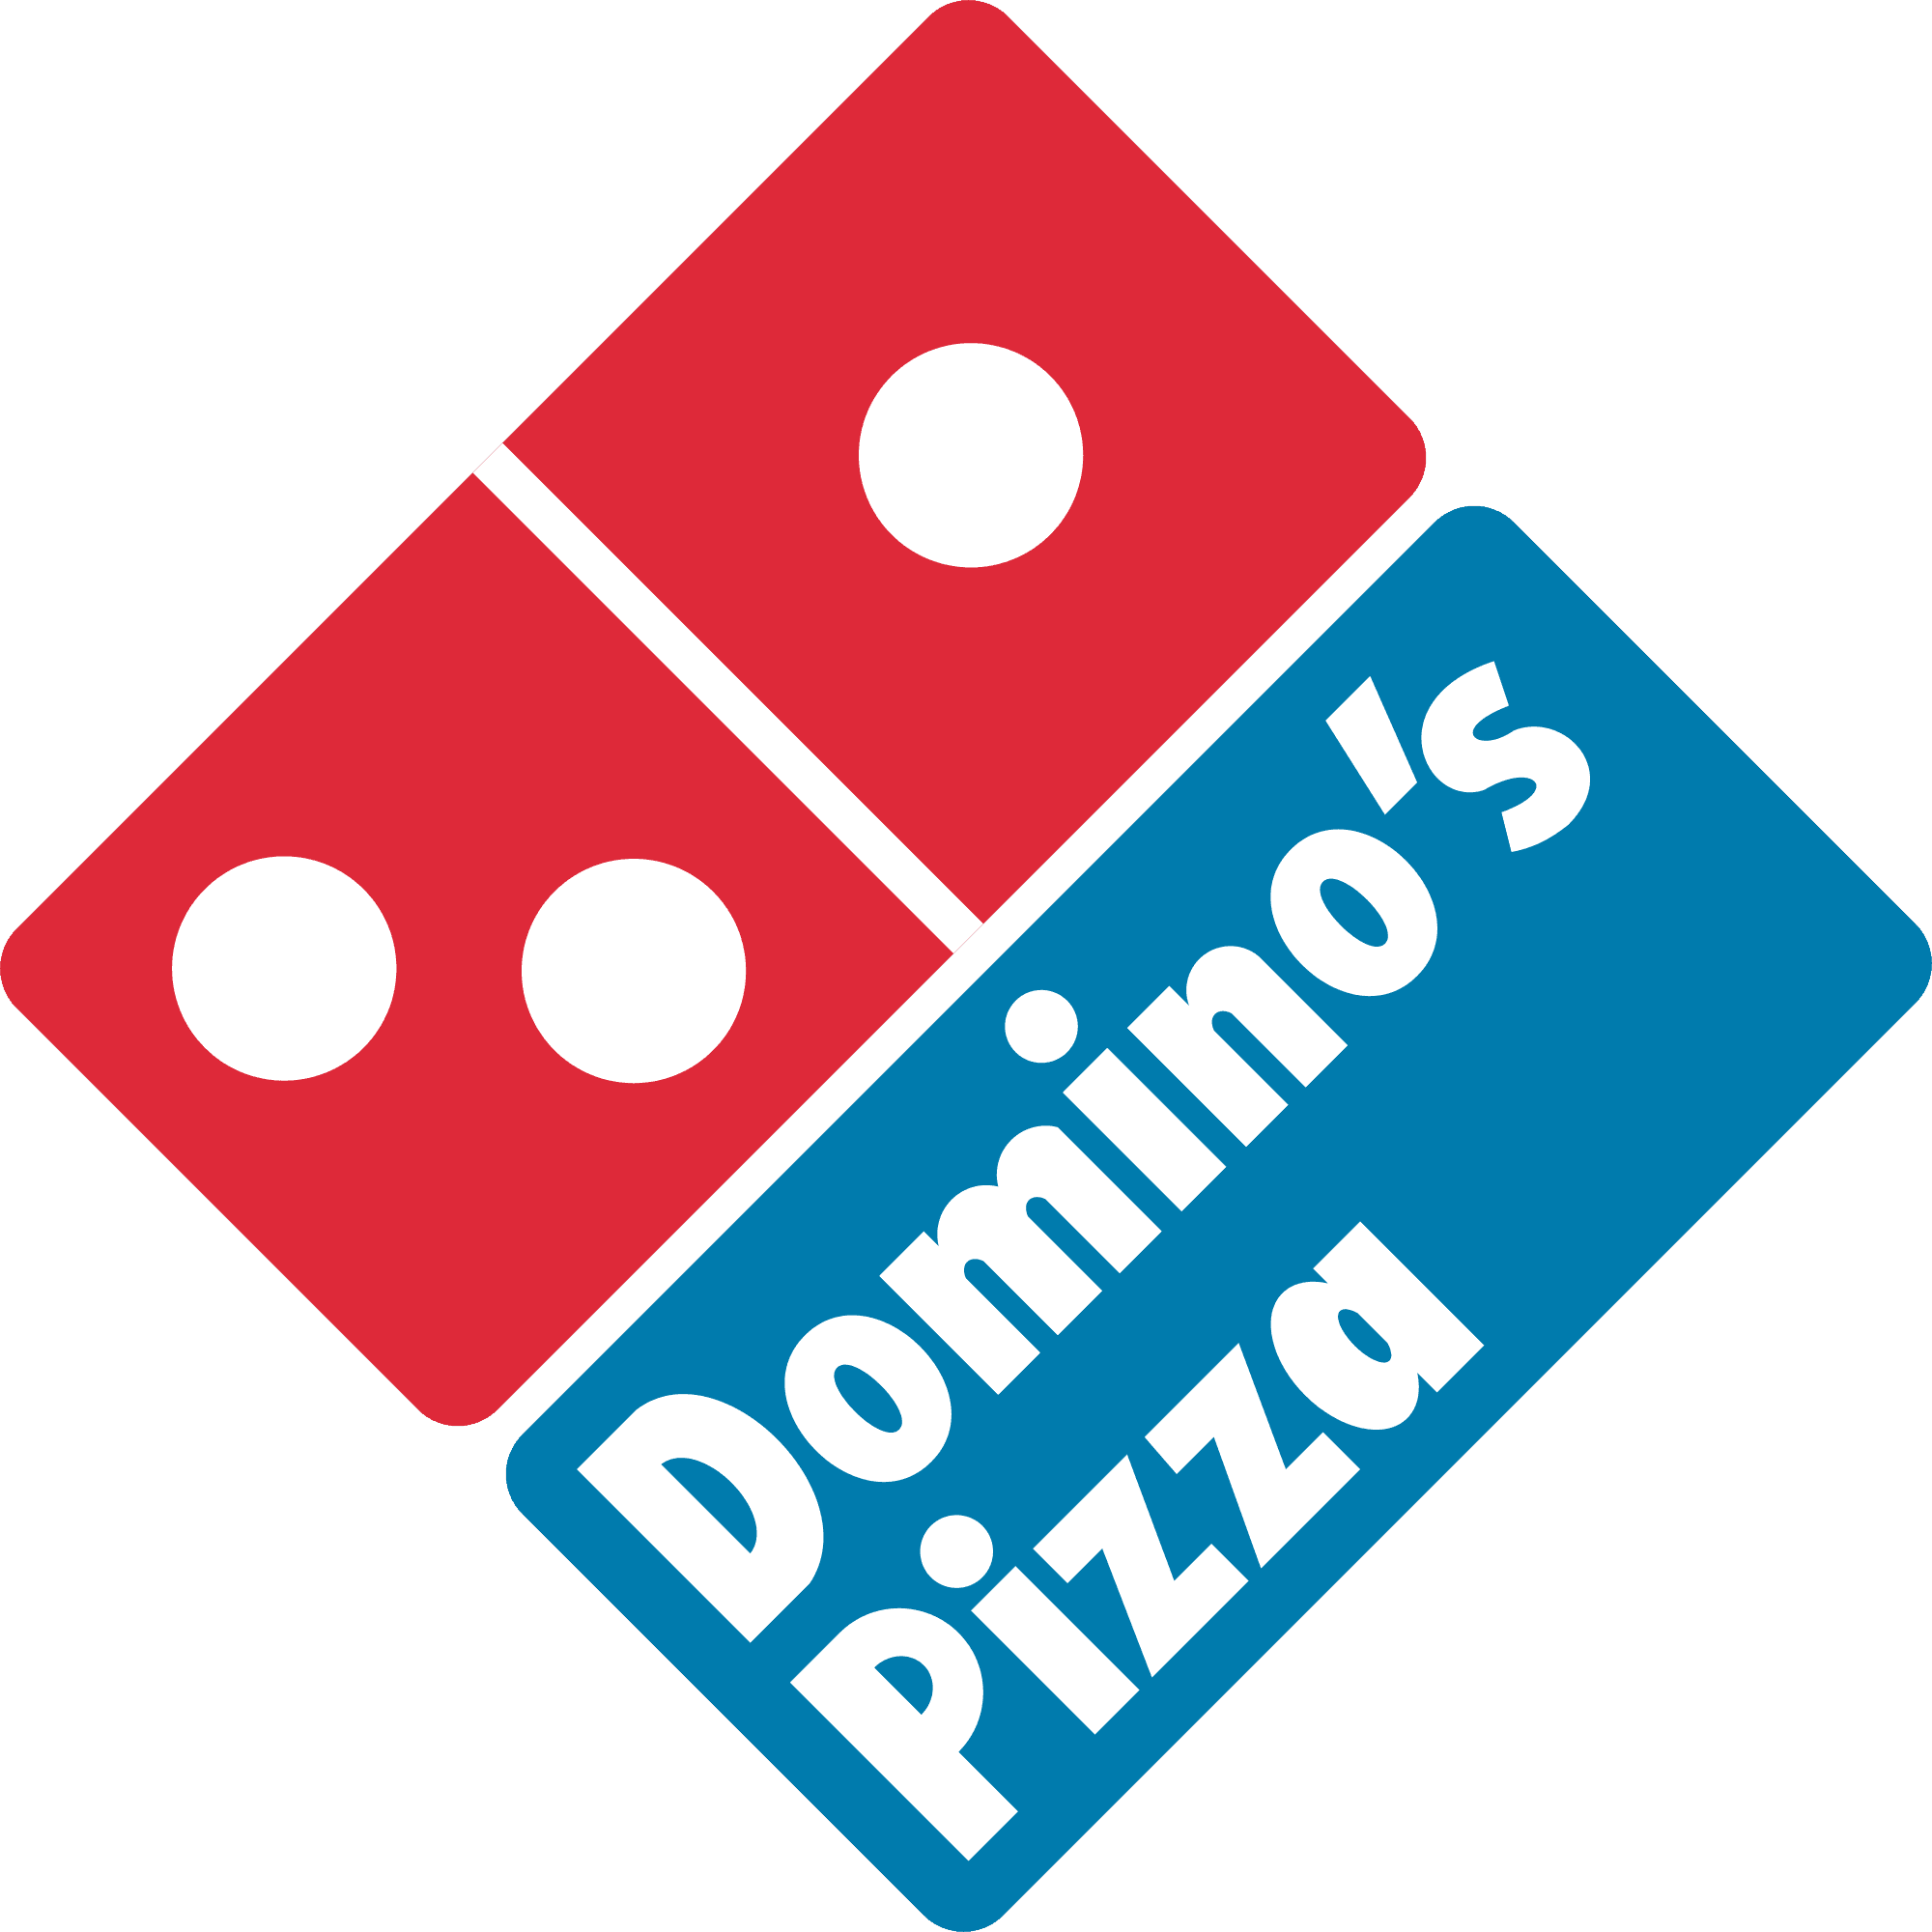 Domino's Pizza Malaysia